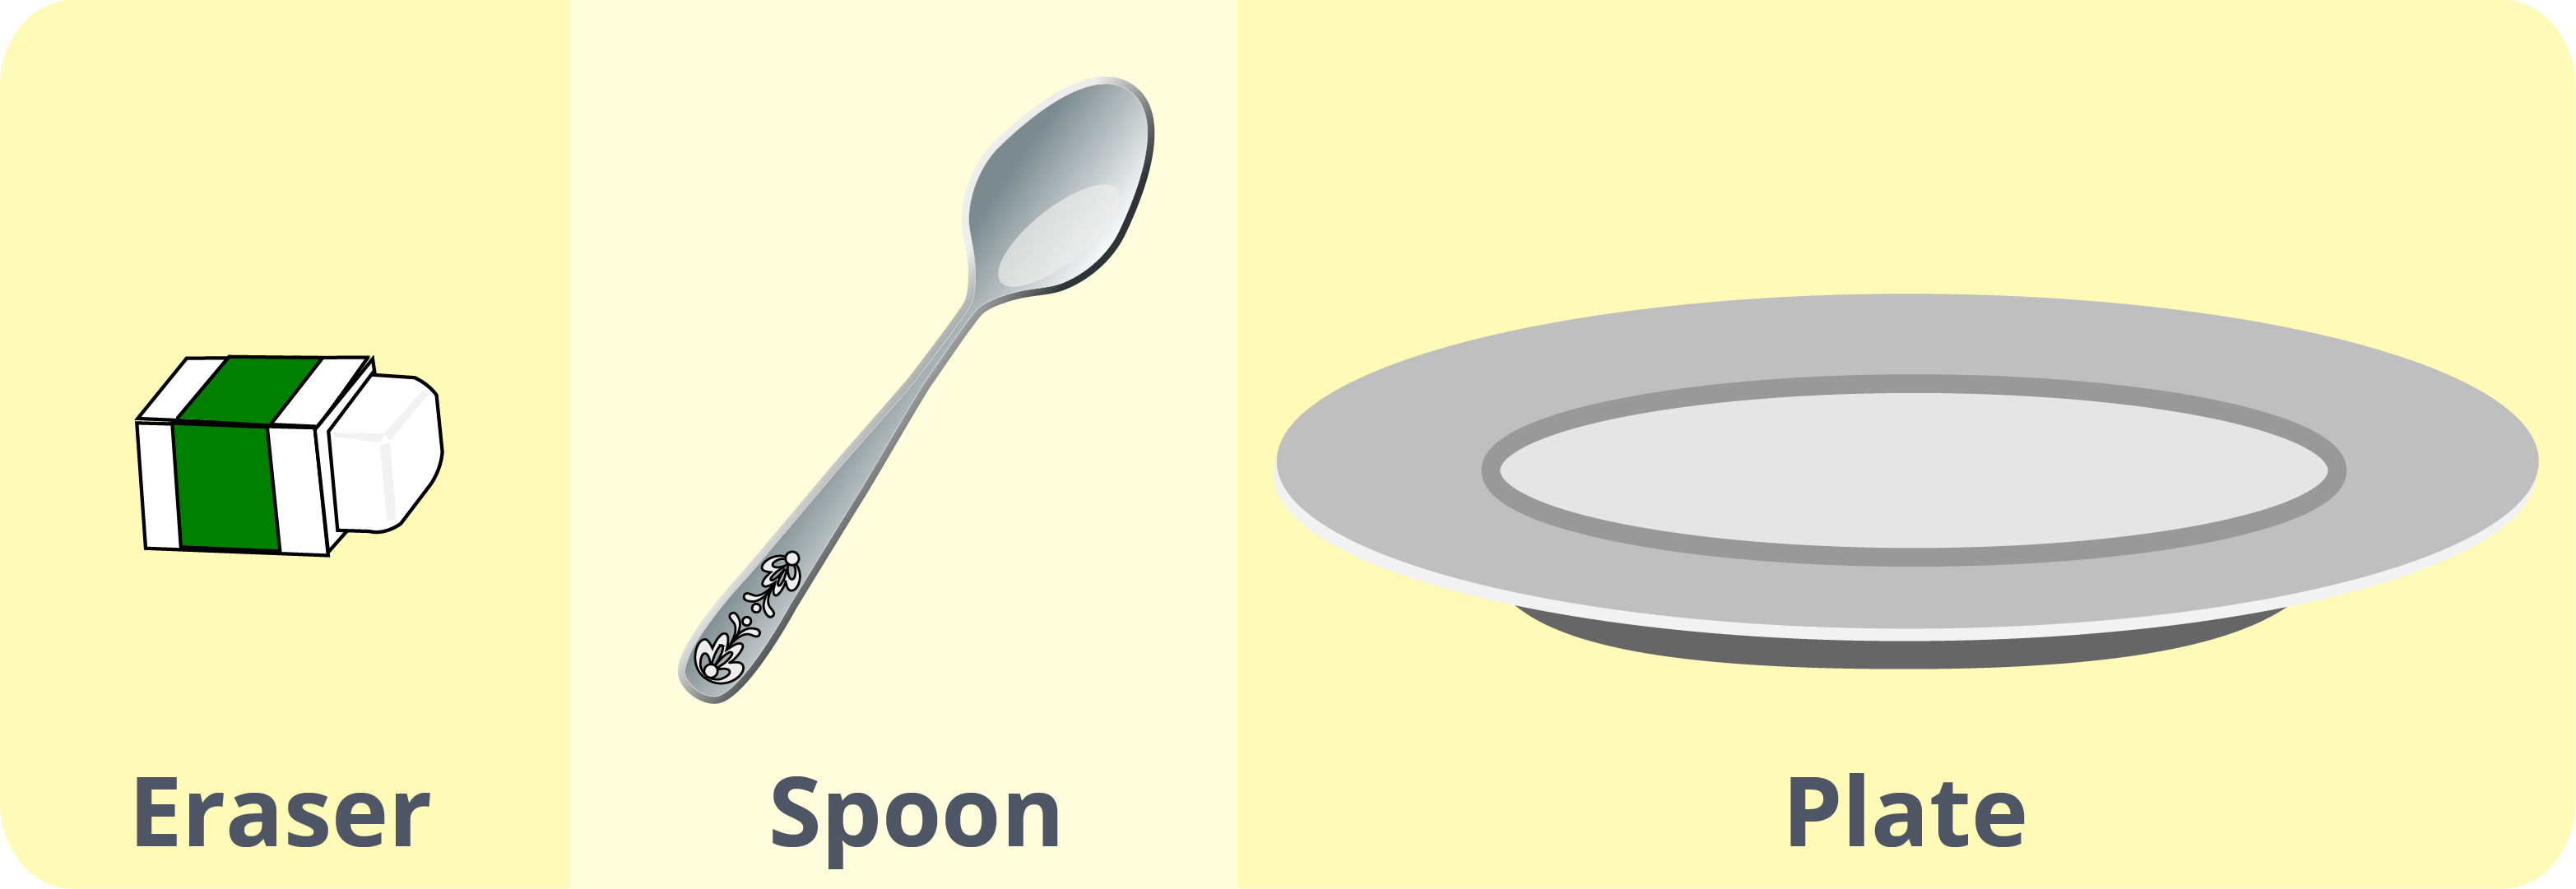 eraser, spoon, plate